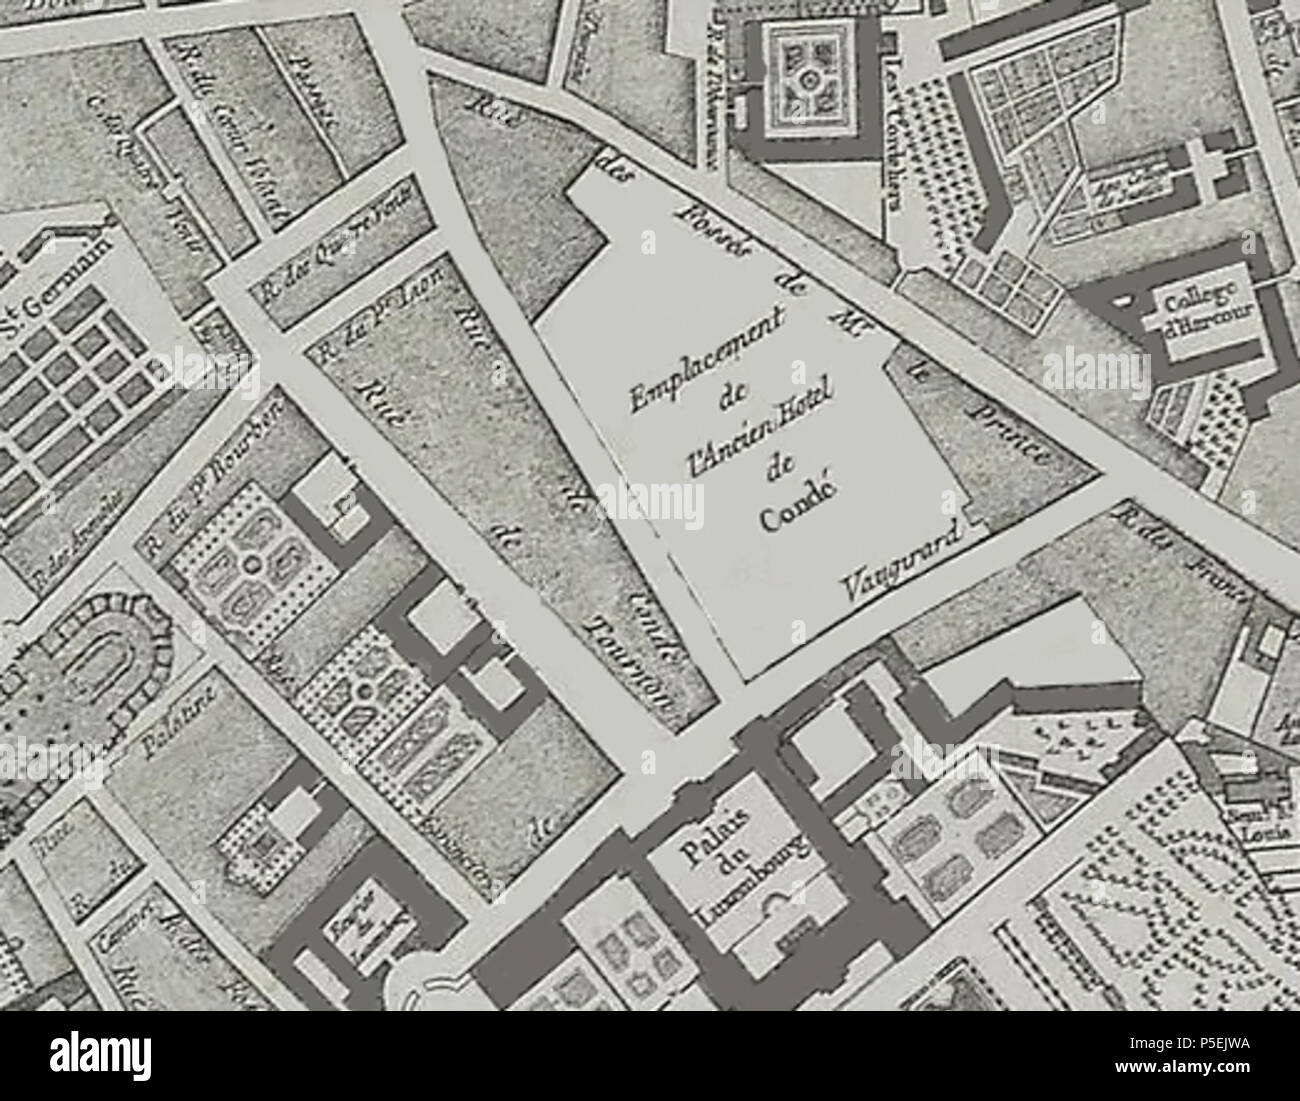 N/A. Français: Extrait du Plan de Jaillot (1775) - EMPLACEMENT de l'Hôtel de Condé. 6. April 2014, 12:45:37. Jaillot 25 1775 Plan de Jaillot - Extrait-1 Stockfoto